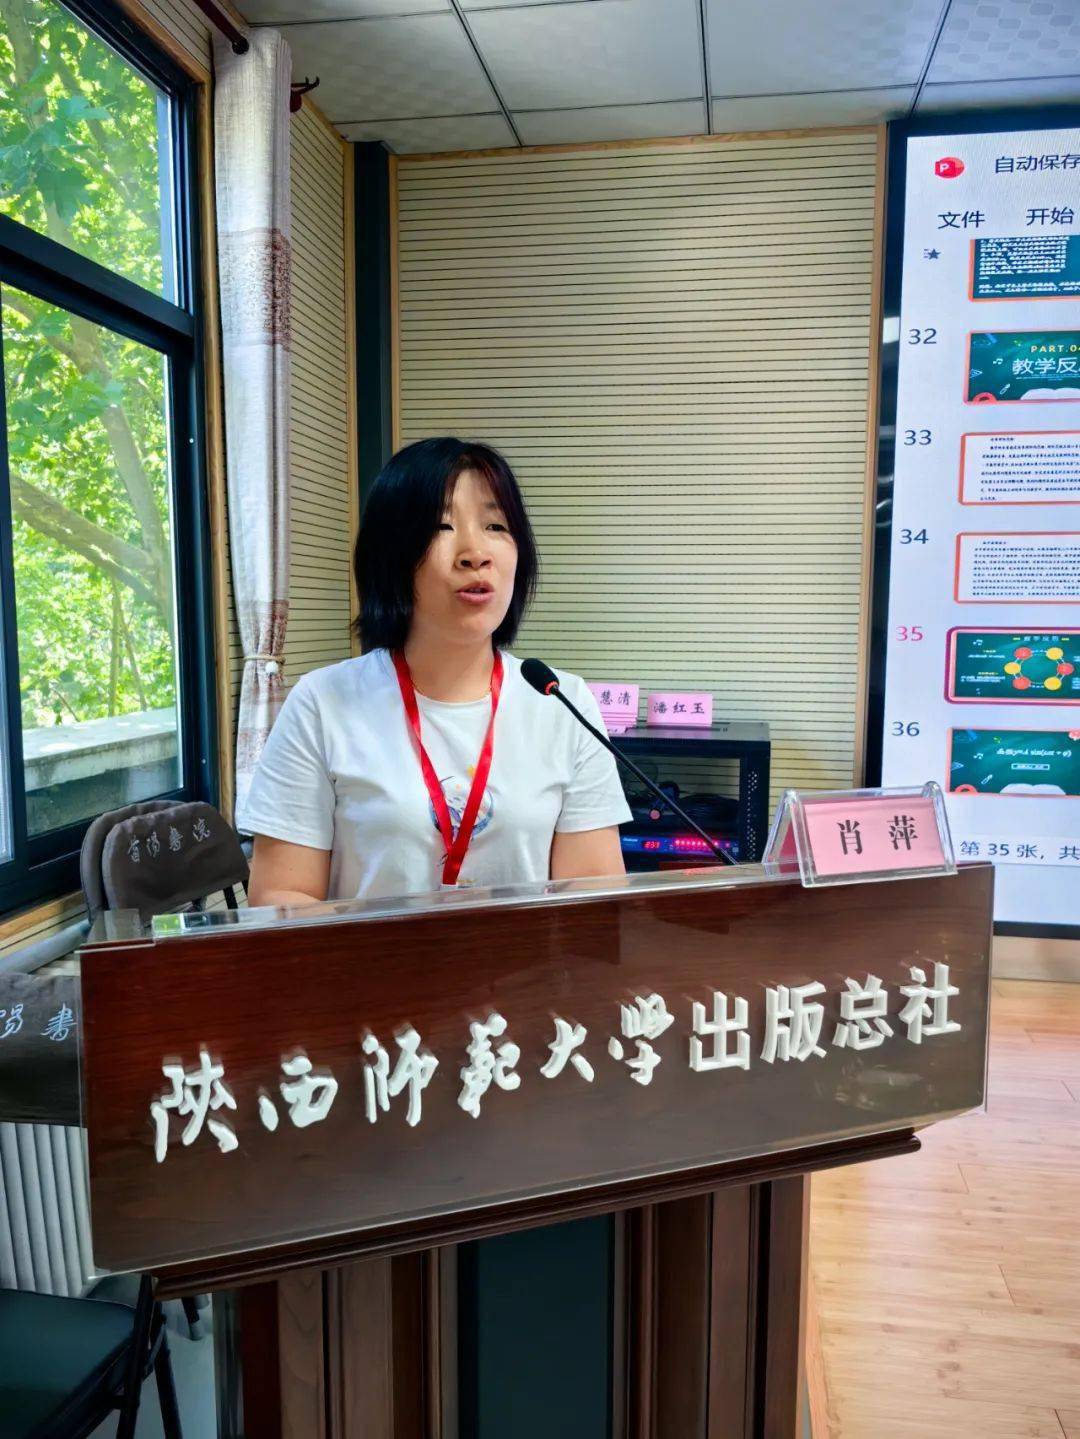 上半场由来自陕西省礼泉县第二中学的王翠老师带来高中视频展示课